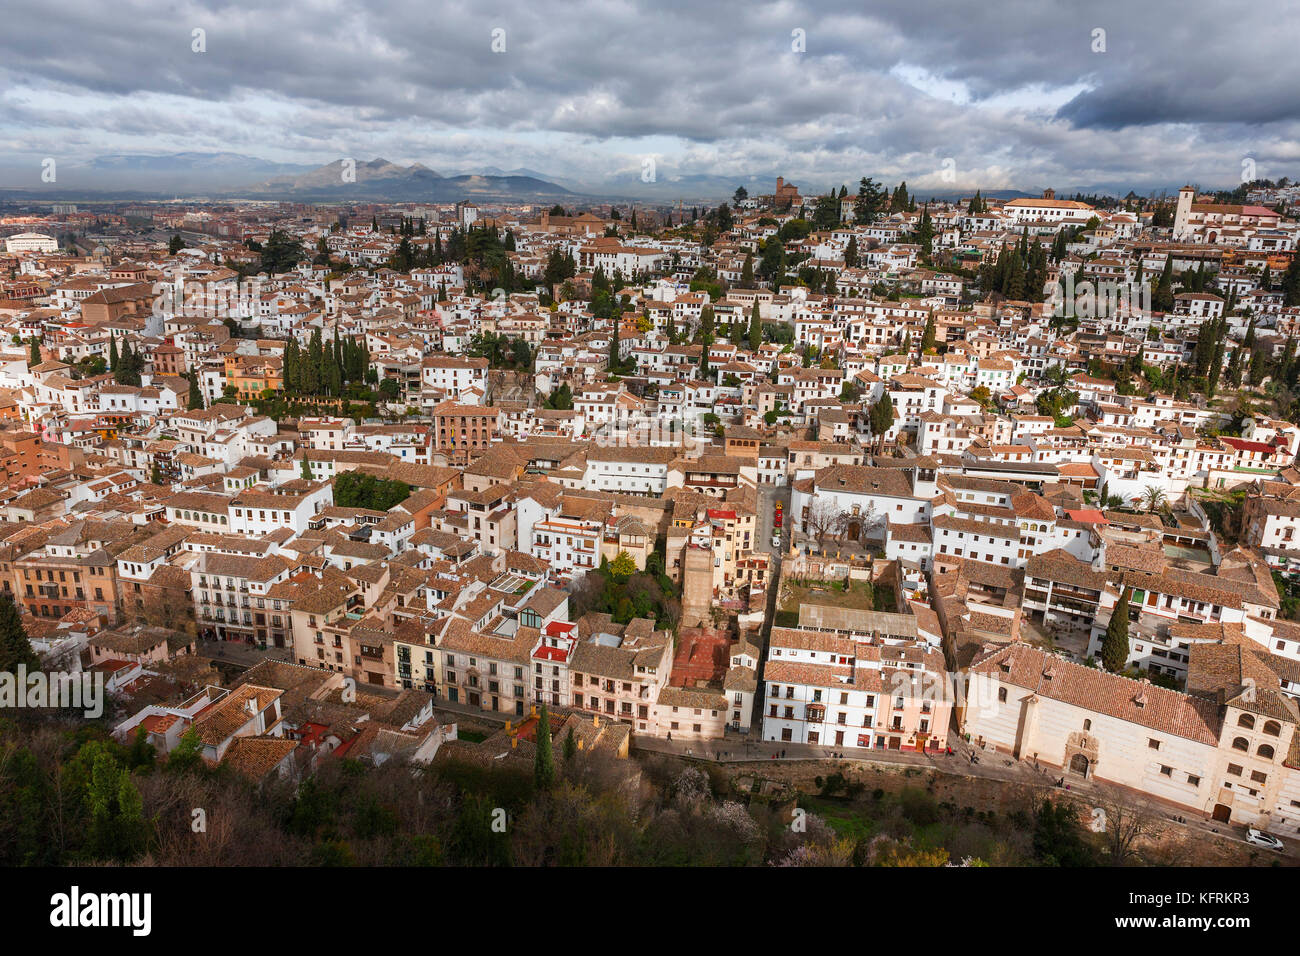 General view of El Albaicín from La Alcazaba, Alhambra, Granada, Spain Stock Photo